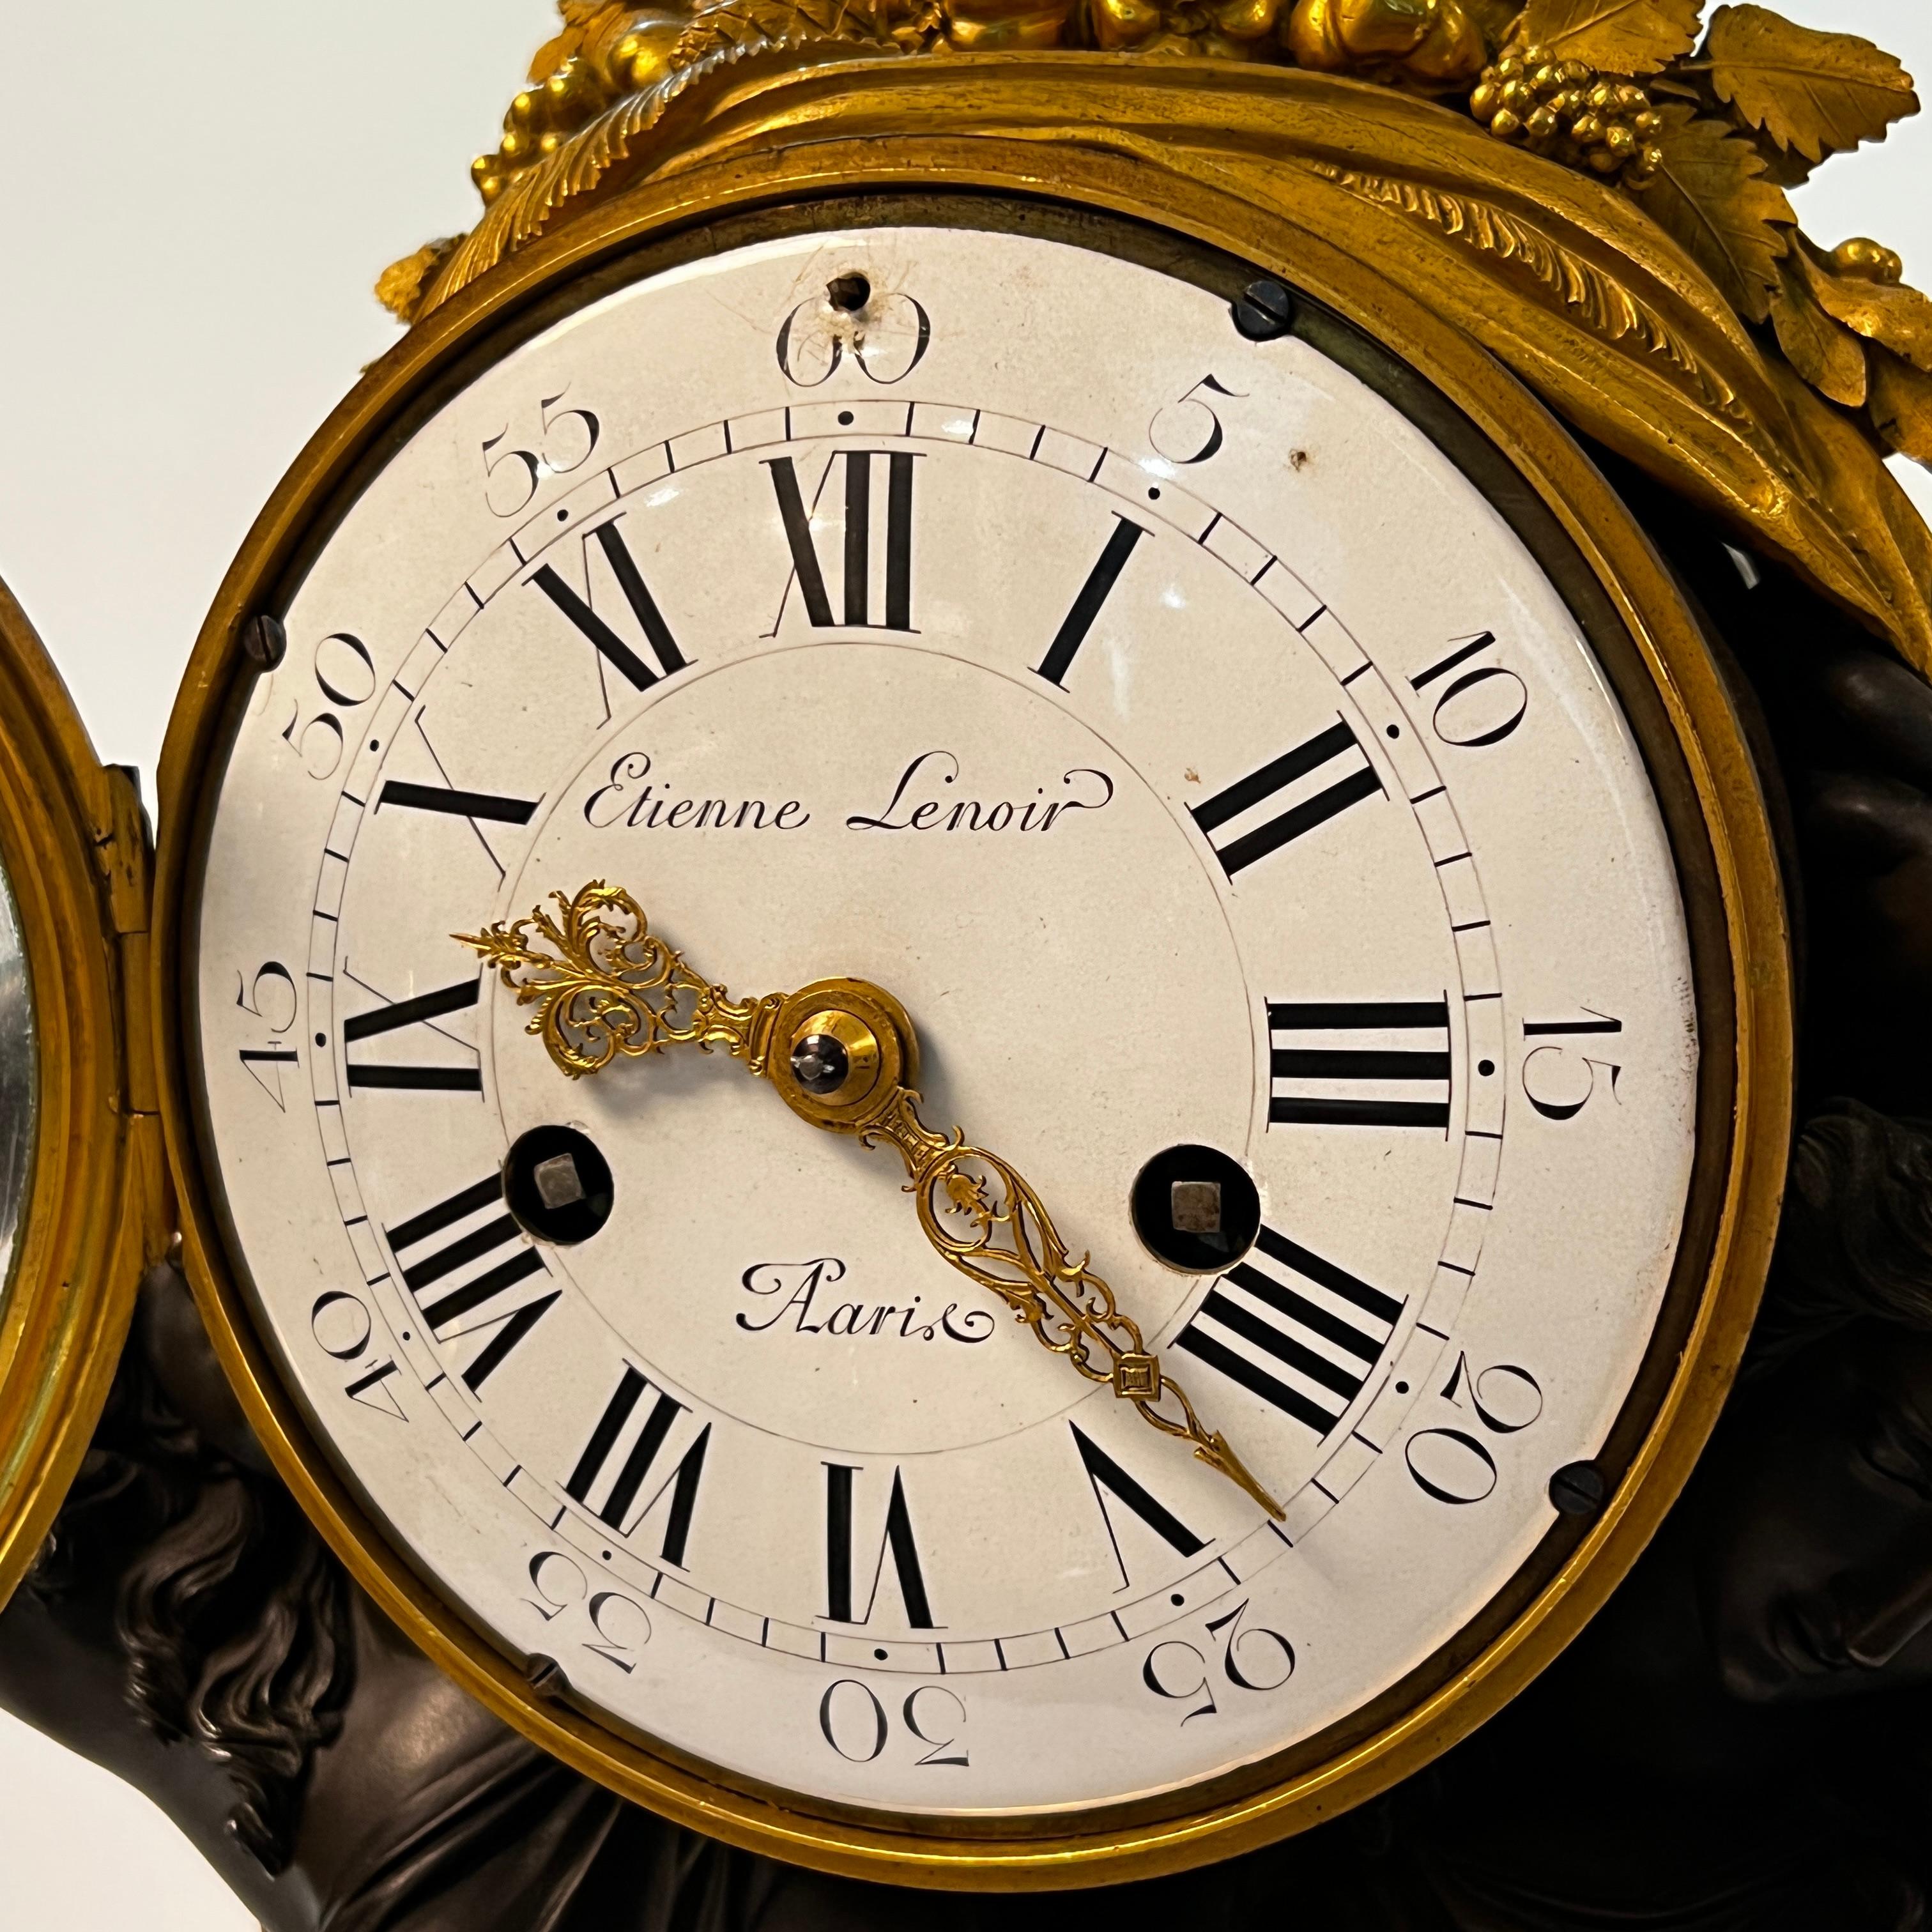 Notre pendule de style Louis XVI à la manière de Louis Simon Boizot (1743-1809) présente les figures patinées de femmes debout néoclassiques soutenant le cadran de l'horloge, des surfaces dorées à l'or fin et un cadran en porcelaine avec des